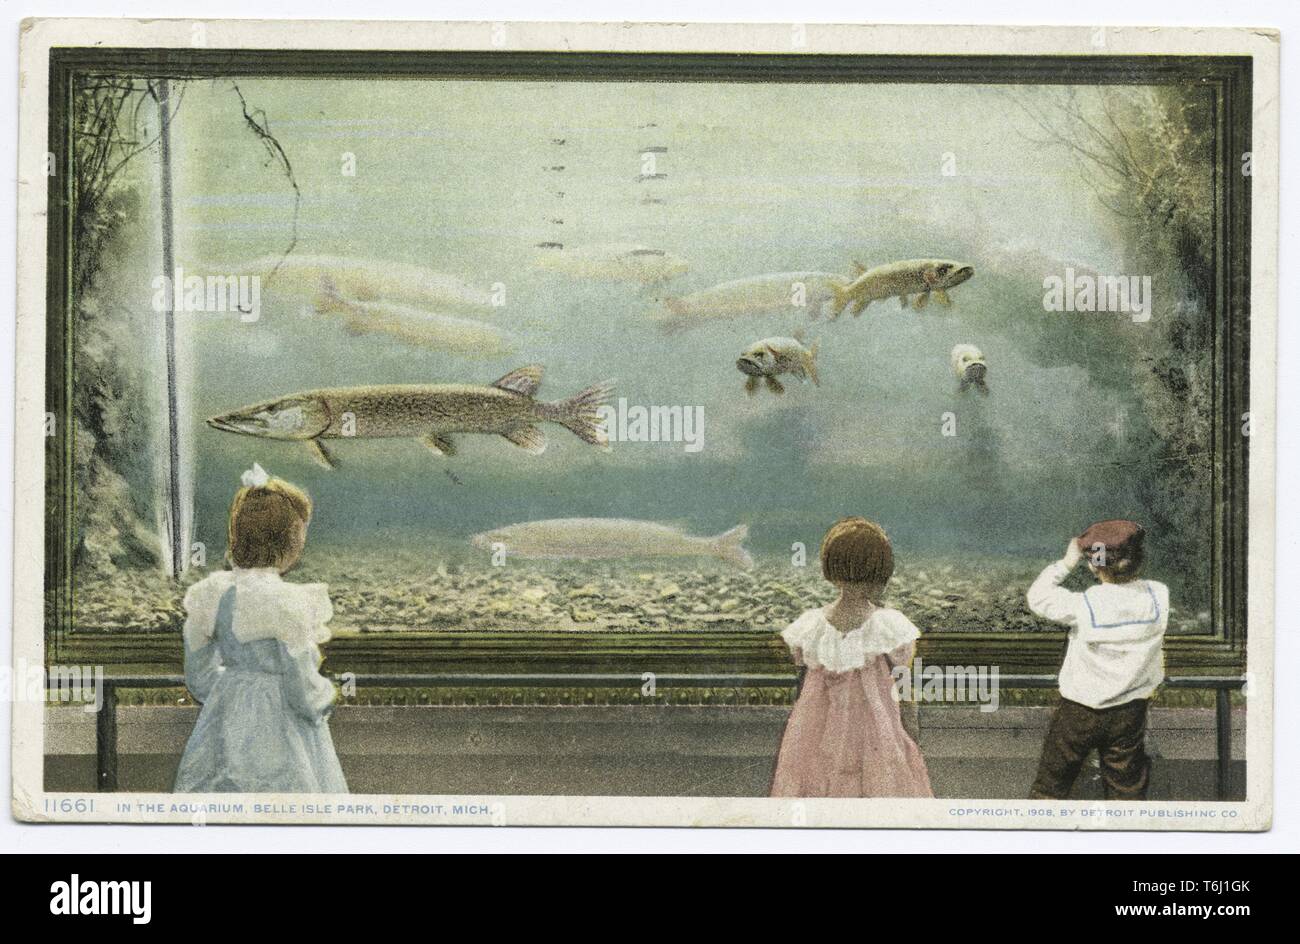 Detroit Publishing Company vintage postcard d'enfants à la recherche d'un réservoir dans un aquarium à Belle Isle Park, Détroit, Michigan, 1914. À partir de la Bibliothèque publique de New York. () Banque D'Images